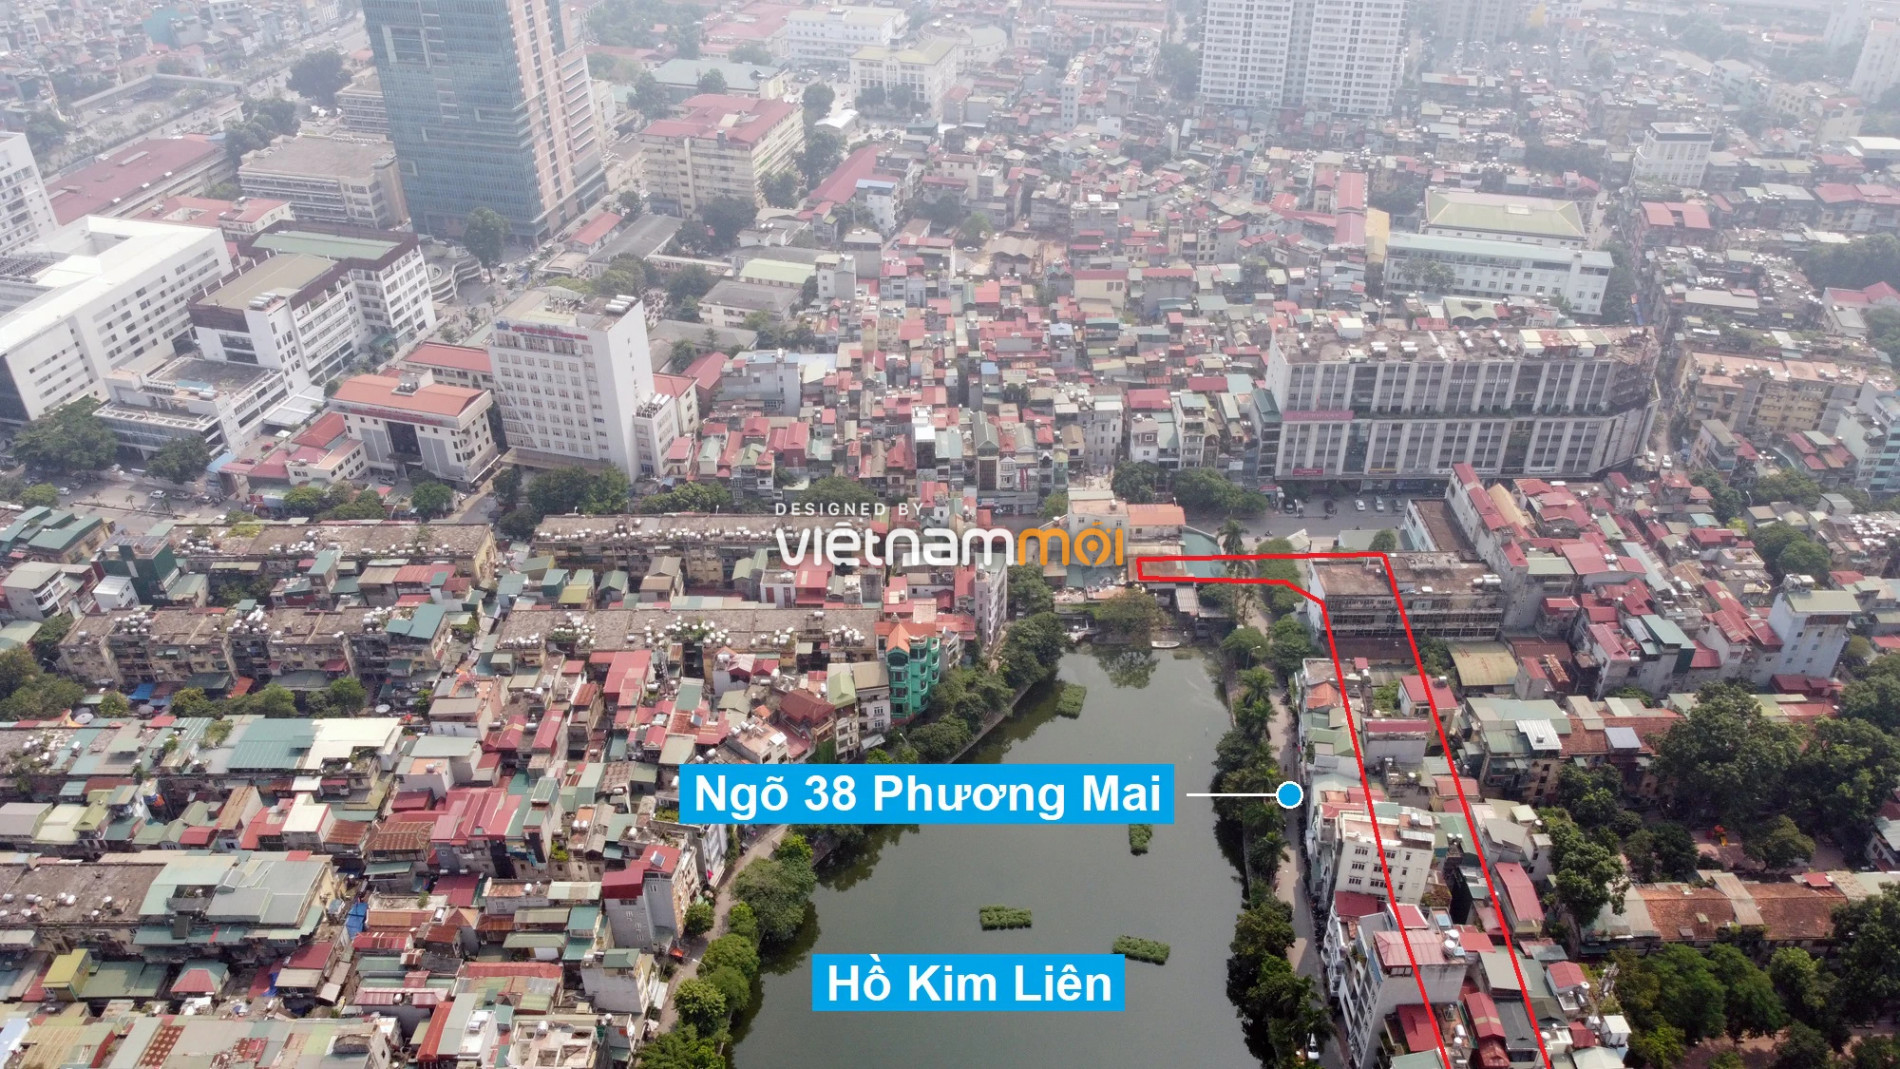 Những khu đất sắp thu hồi để mở đường ở quận Đống Đa, Hà Nội (phần 2) - Ảnh 3.